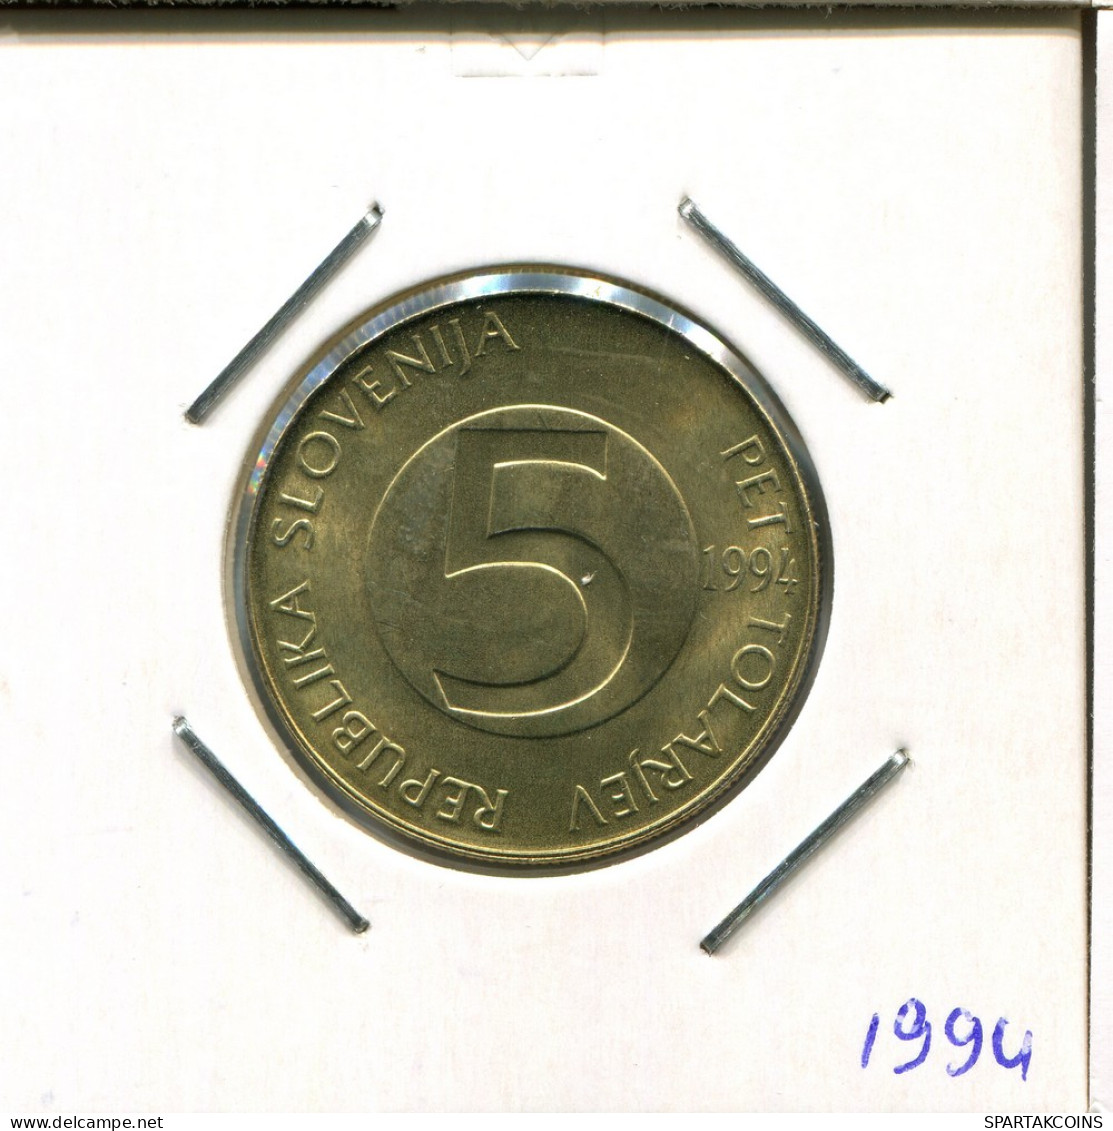 5 TOLARJEV 1994 SLOVENIA Coin #AR382.U - Slovenië